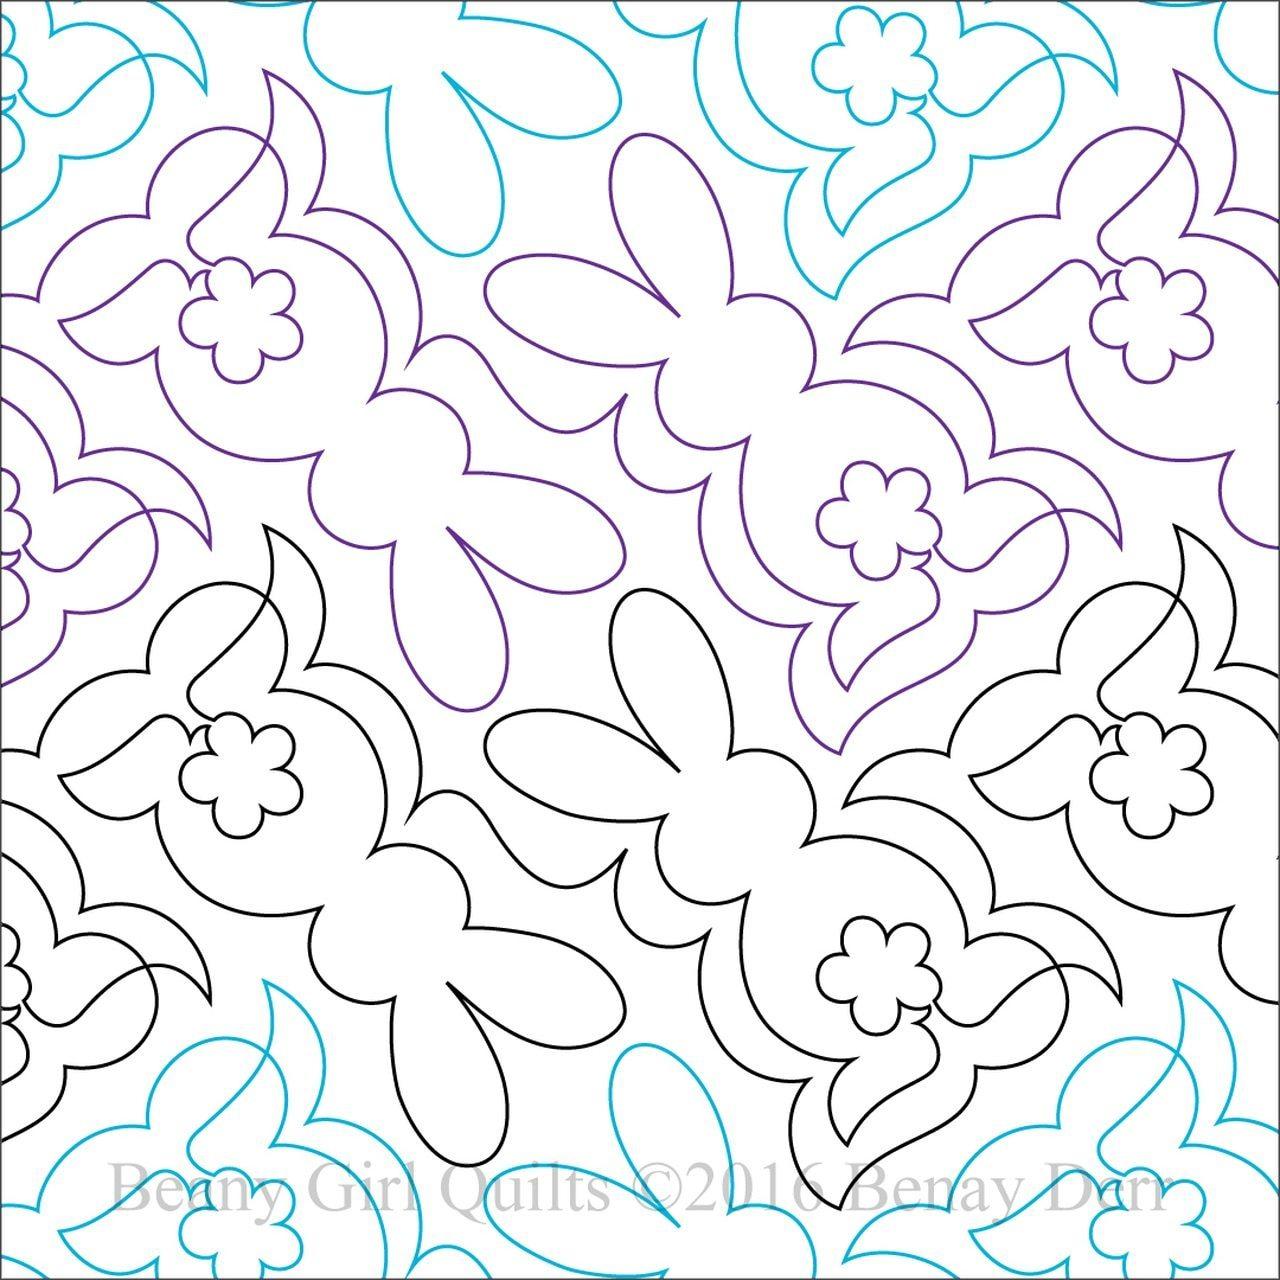 Bunny Hop - Paper Pantograph - Kawartha Quilting and Sewing LTD.